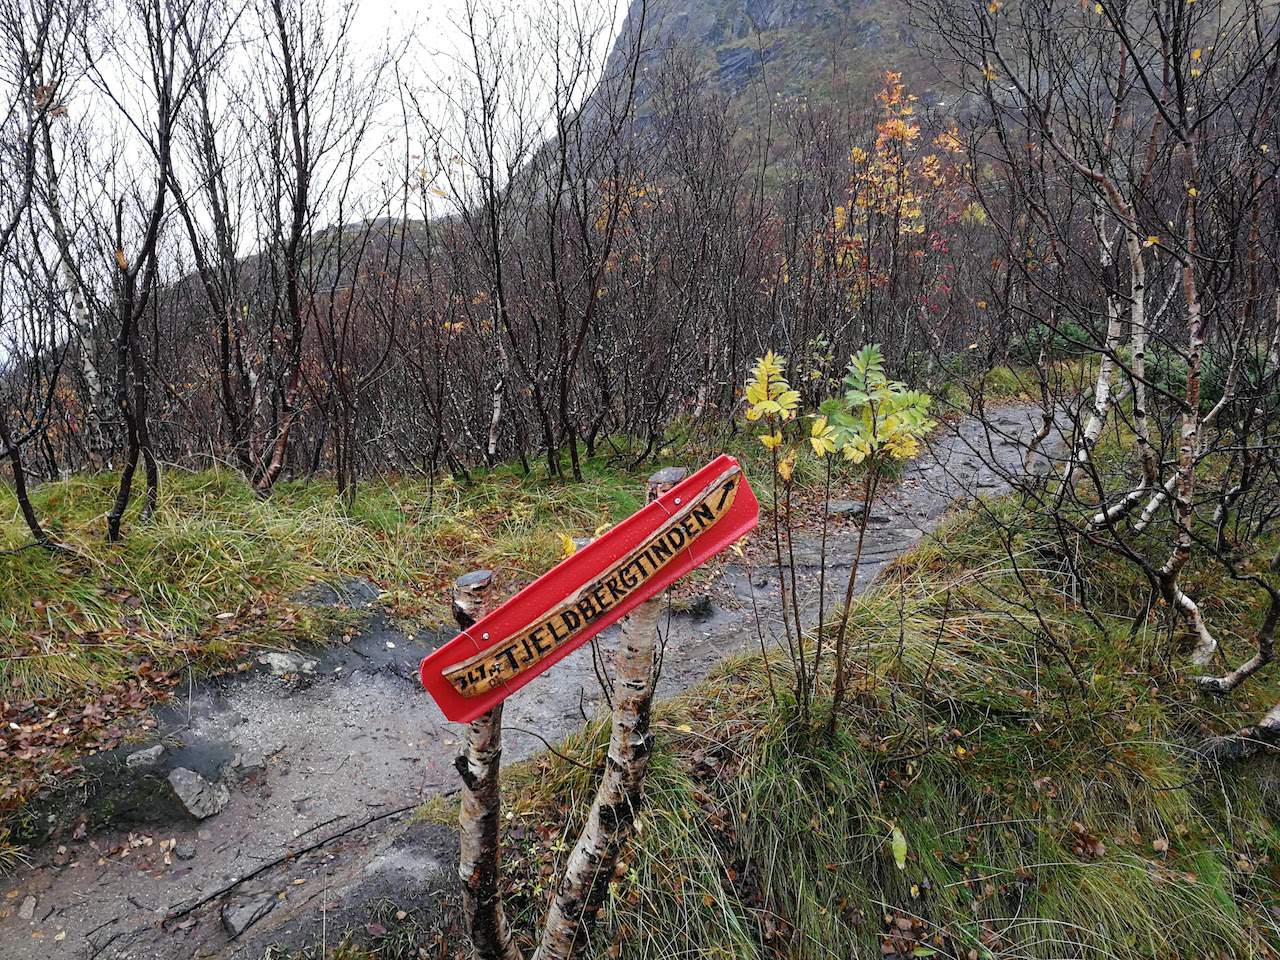 Tjellbergtind hiking trail